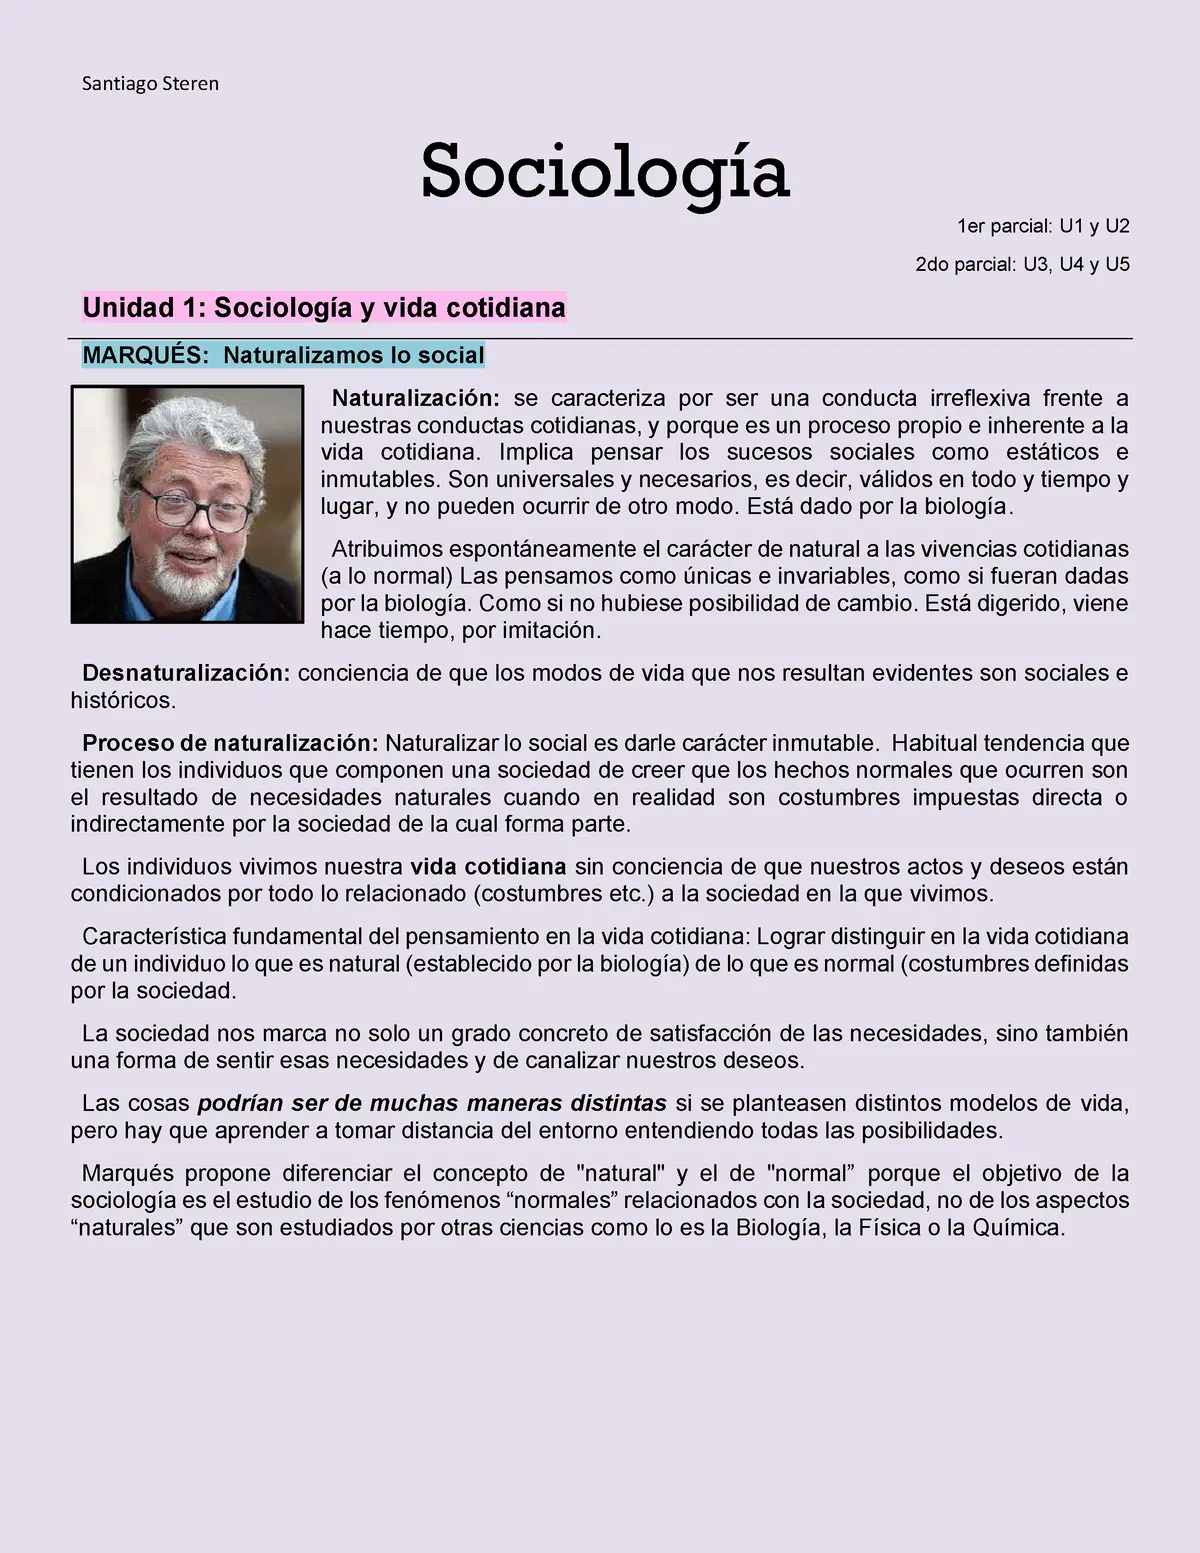 sociologia cbc resumen - Qué es la Sociología en general